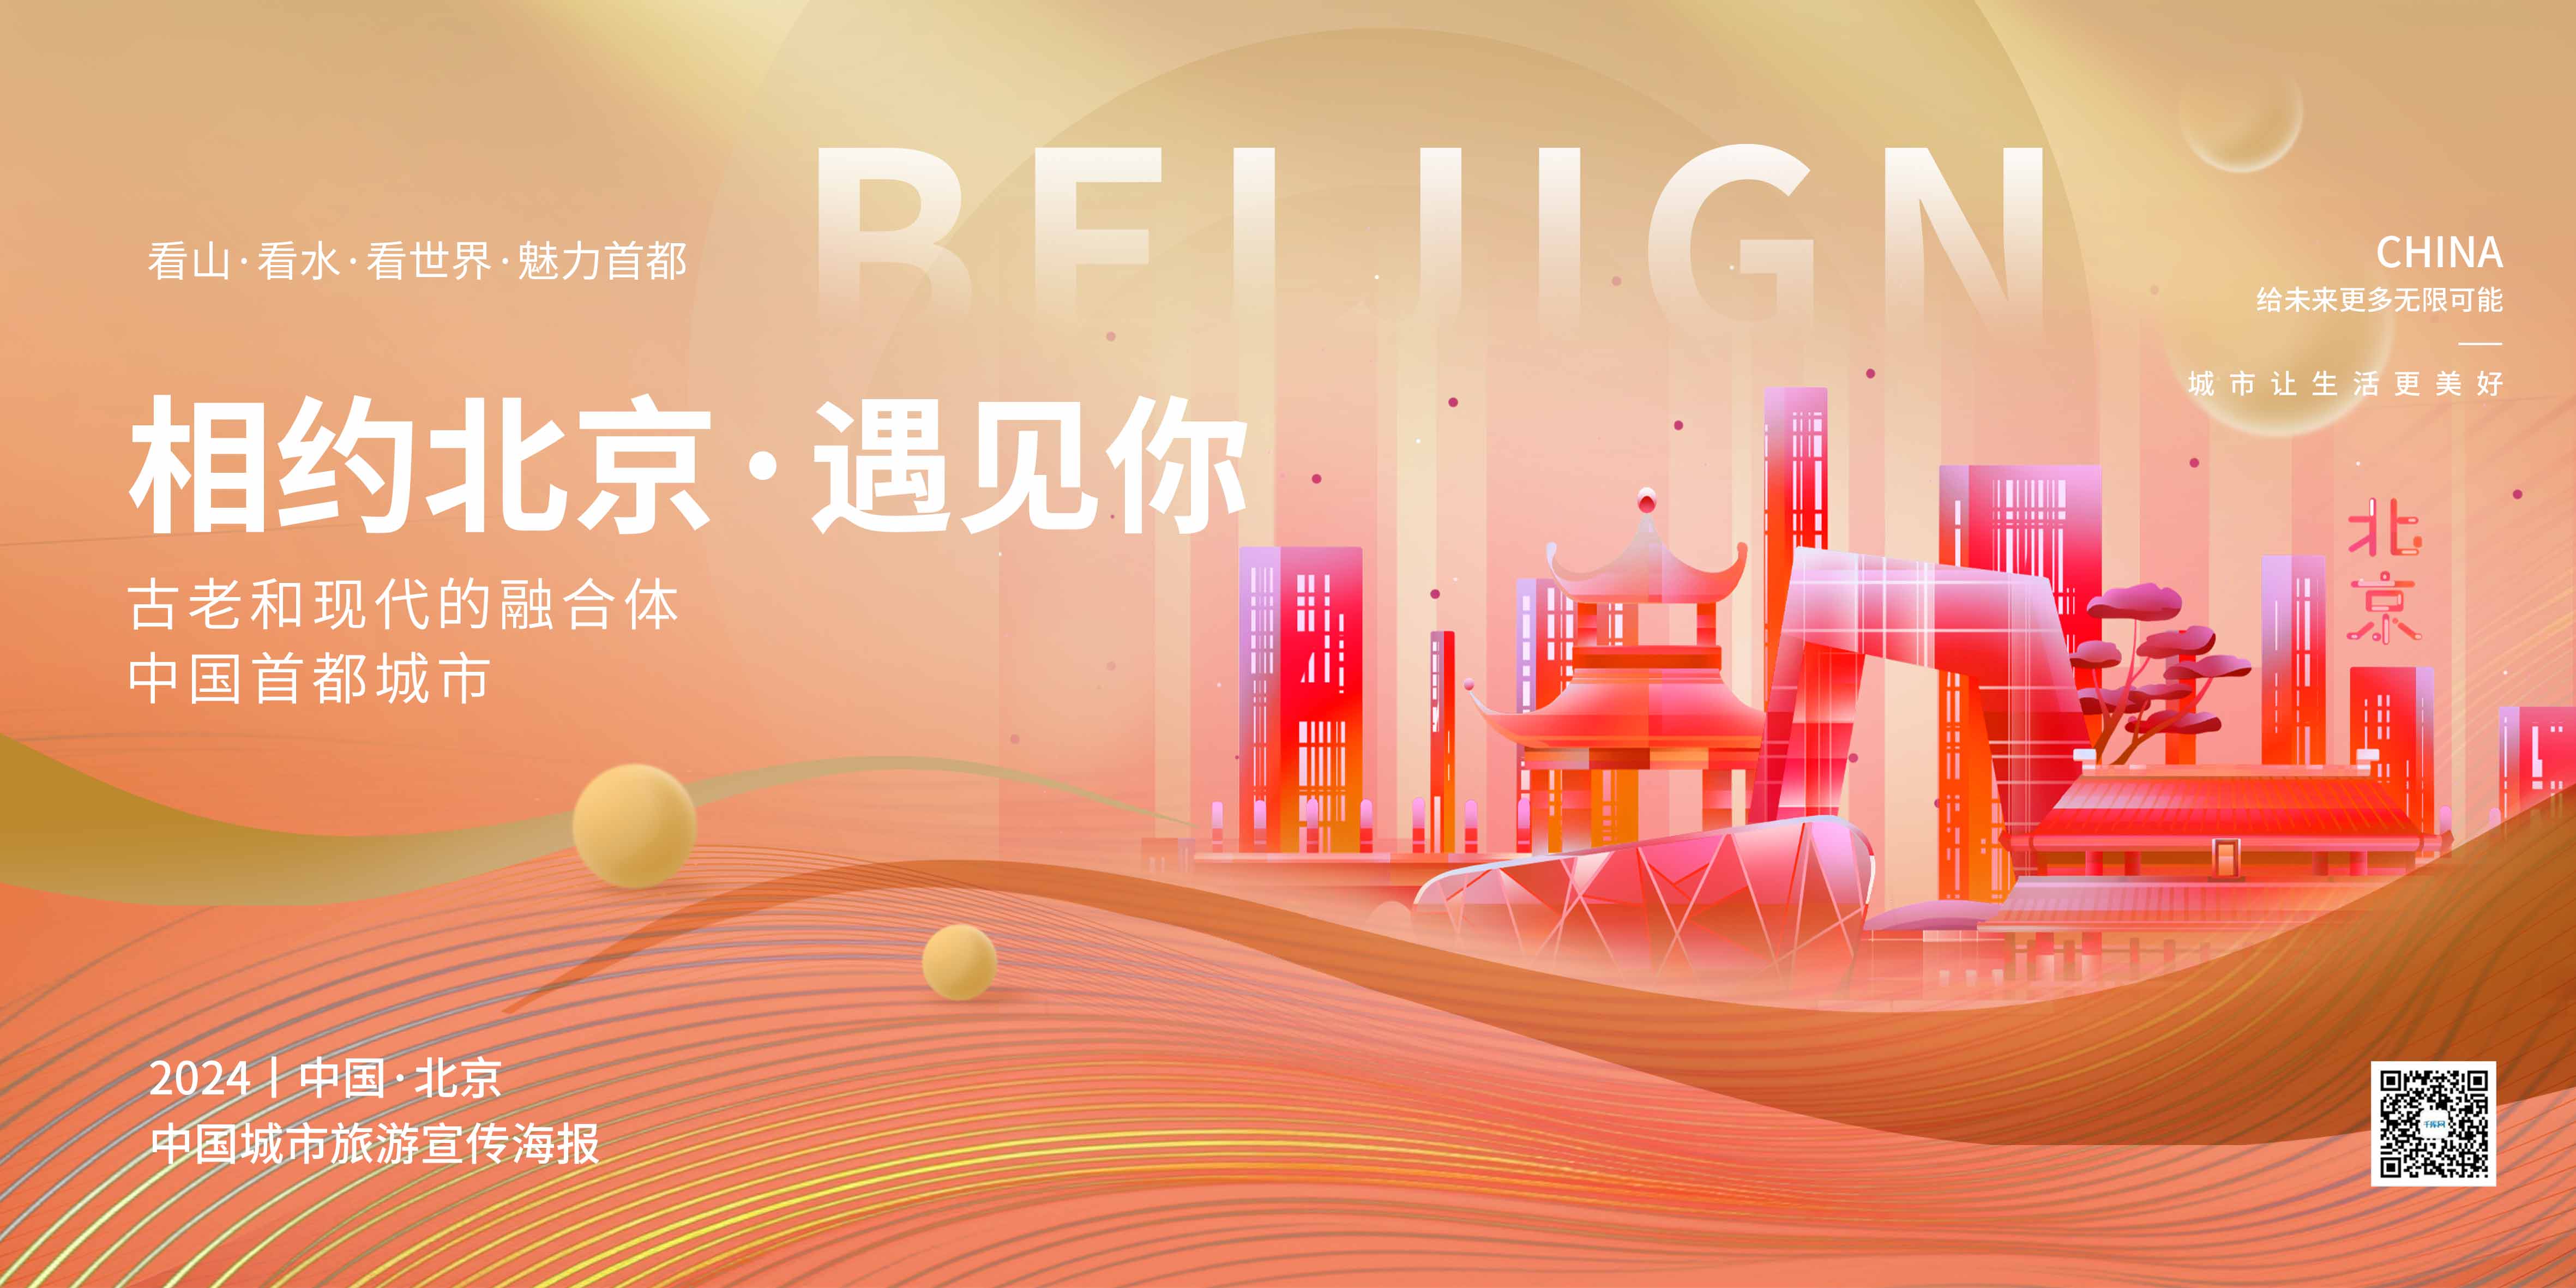 五一旅游北京地标橙色简约海报kt展架图片